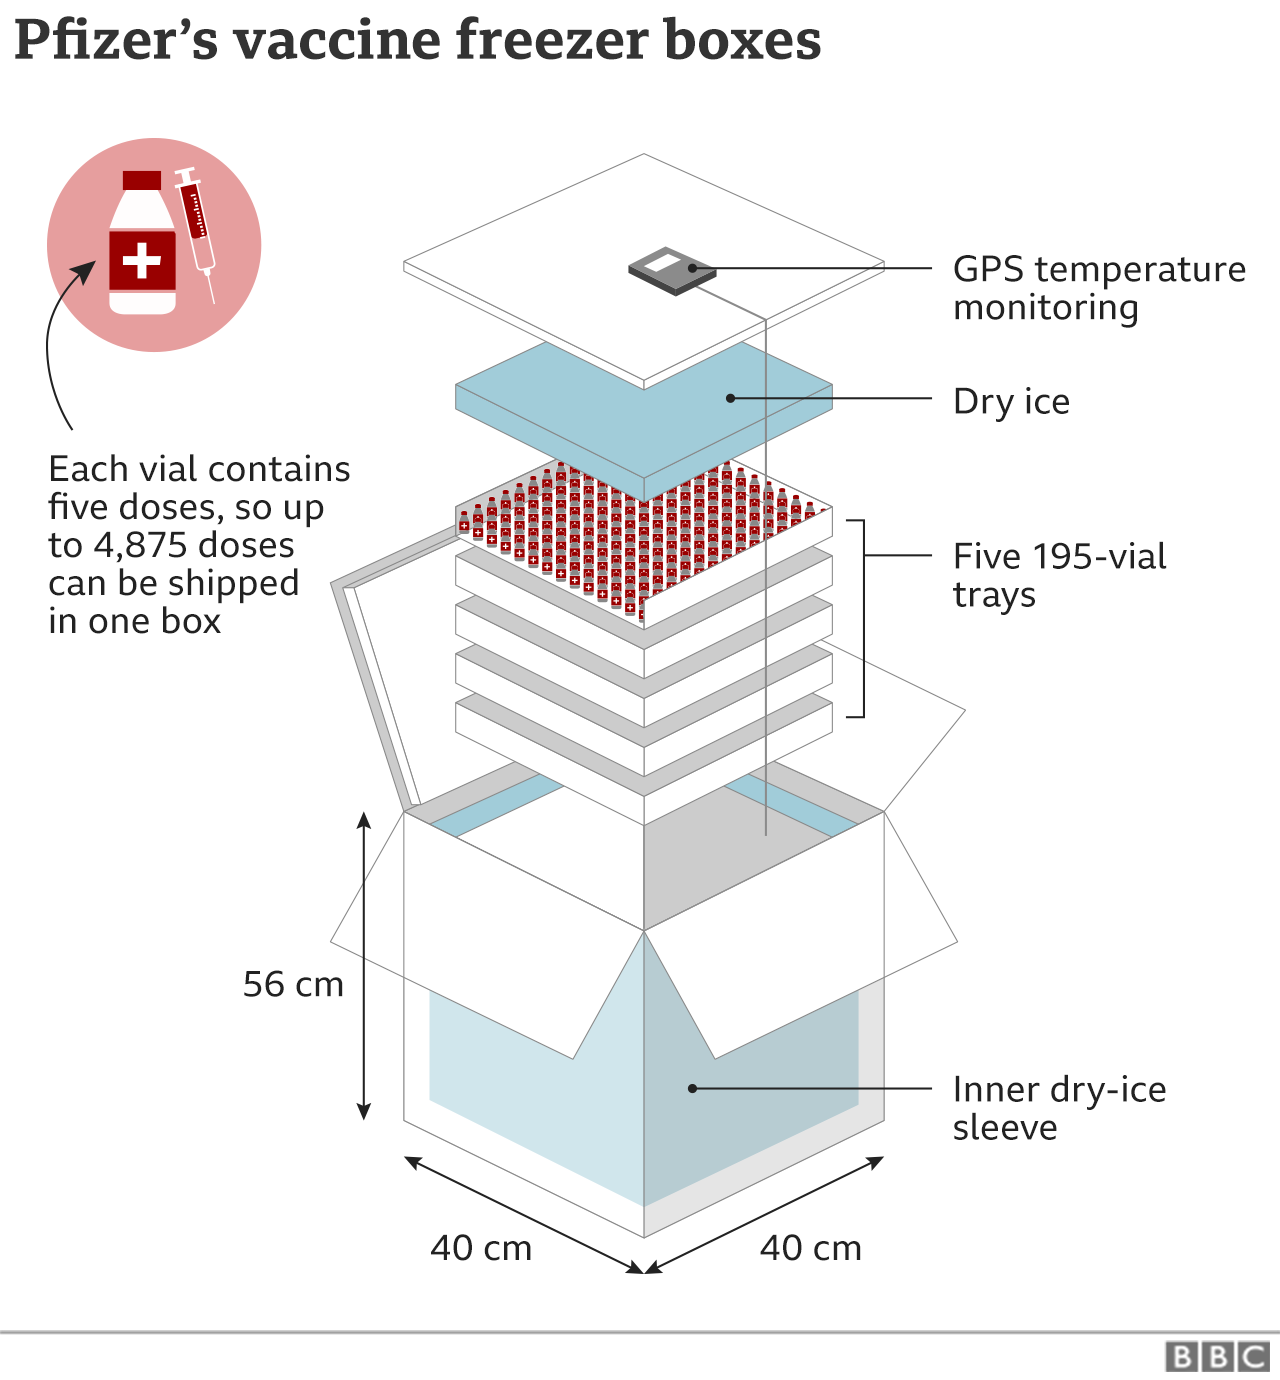 Инфографика, показывающая специальные морозильные камеры Pfizer